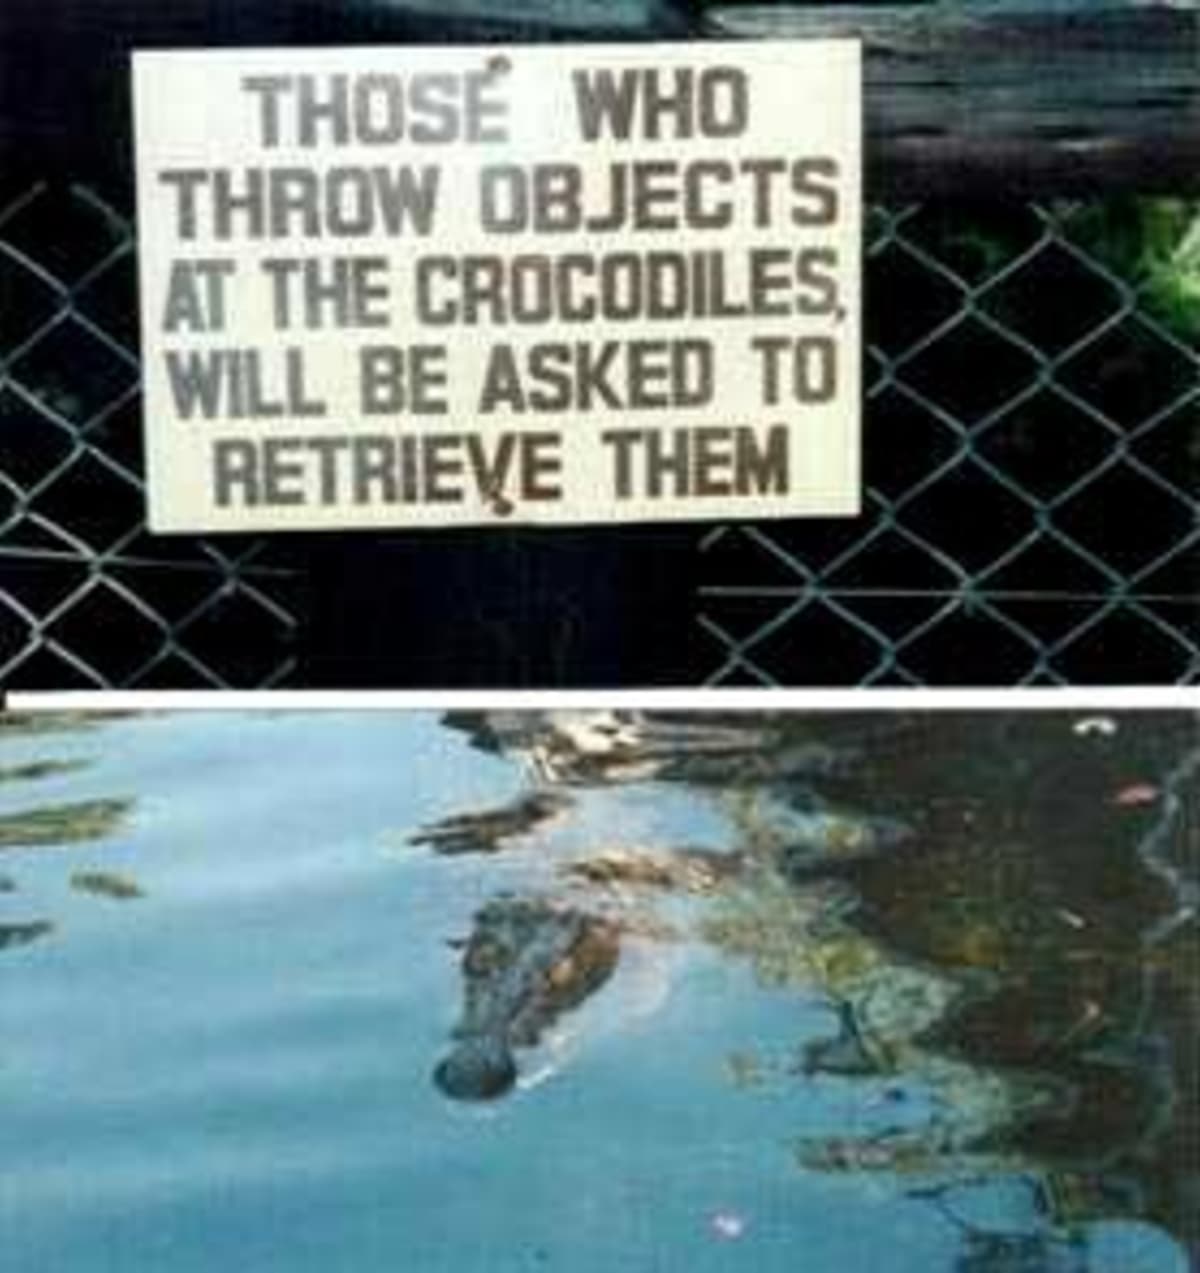 "Ti, kdo hážou věci ke krokodýlům, je budou muset zase vyndat ven," neznámá americká zoo